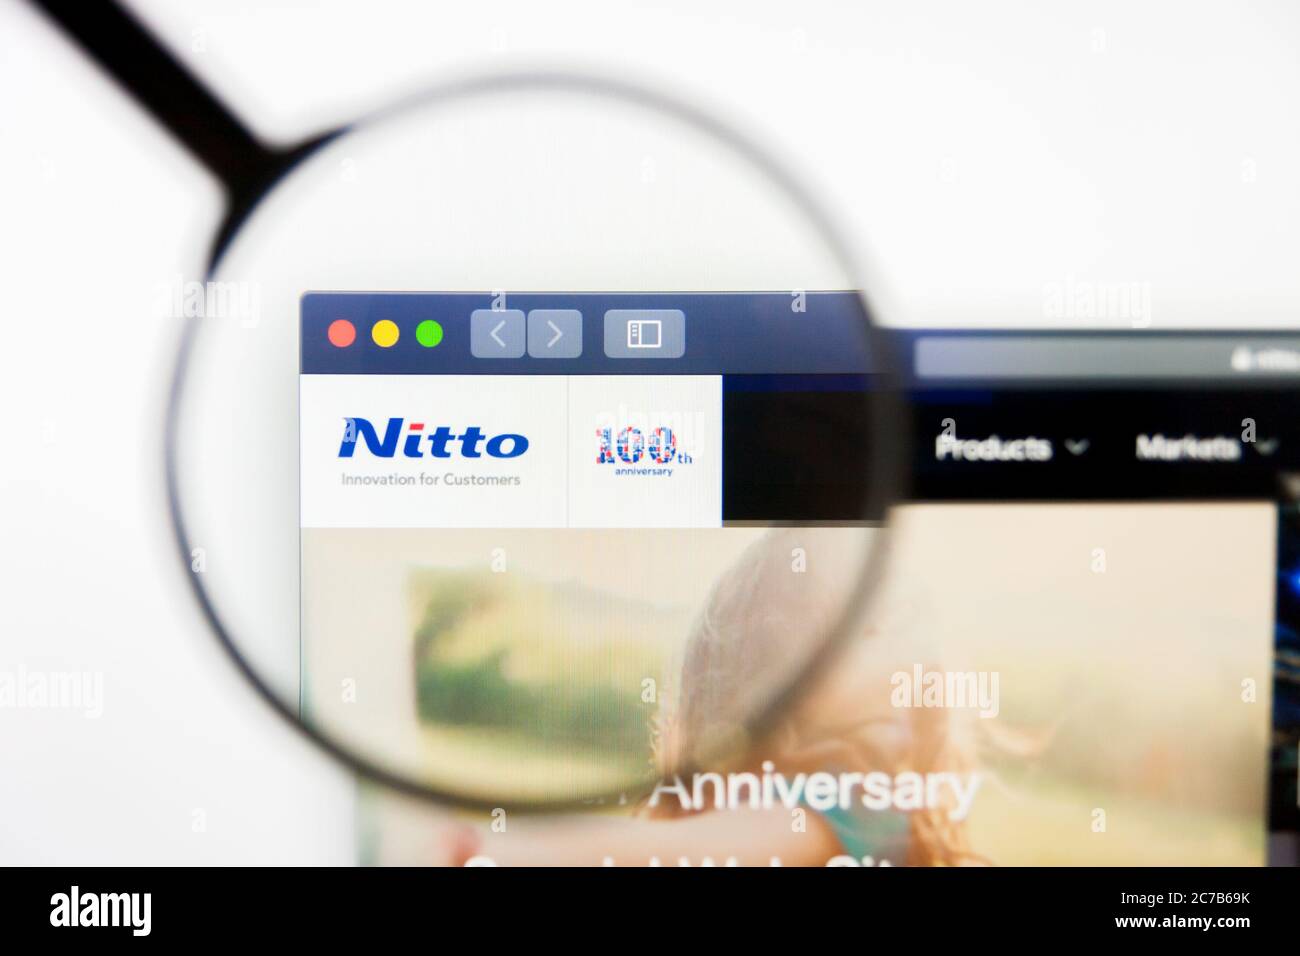 Los Angeles, Californie, Etats-Unis - 10 mars 2019 : Editorial illustratif, page d'accueil du site Web de Nitto Denko. Logo Nitto Denko visible sur l'écran Banque D'Images